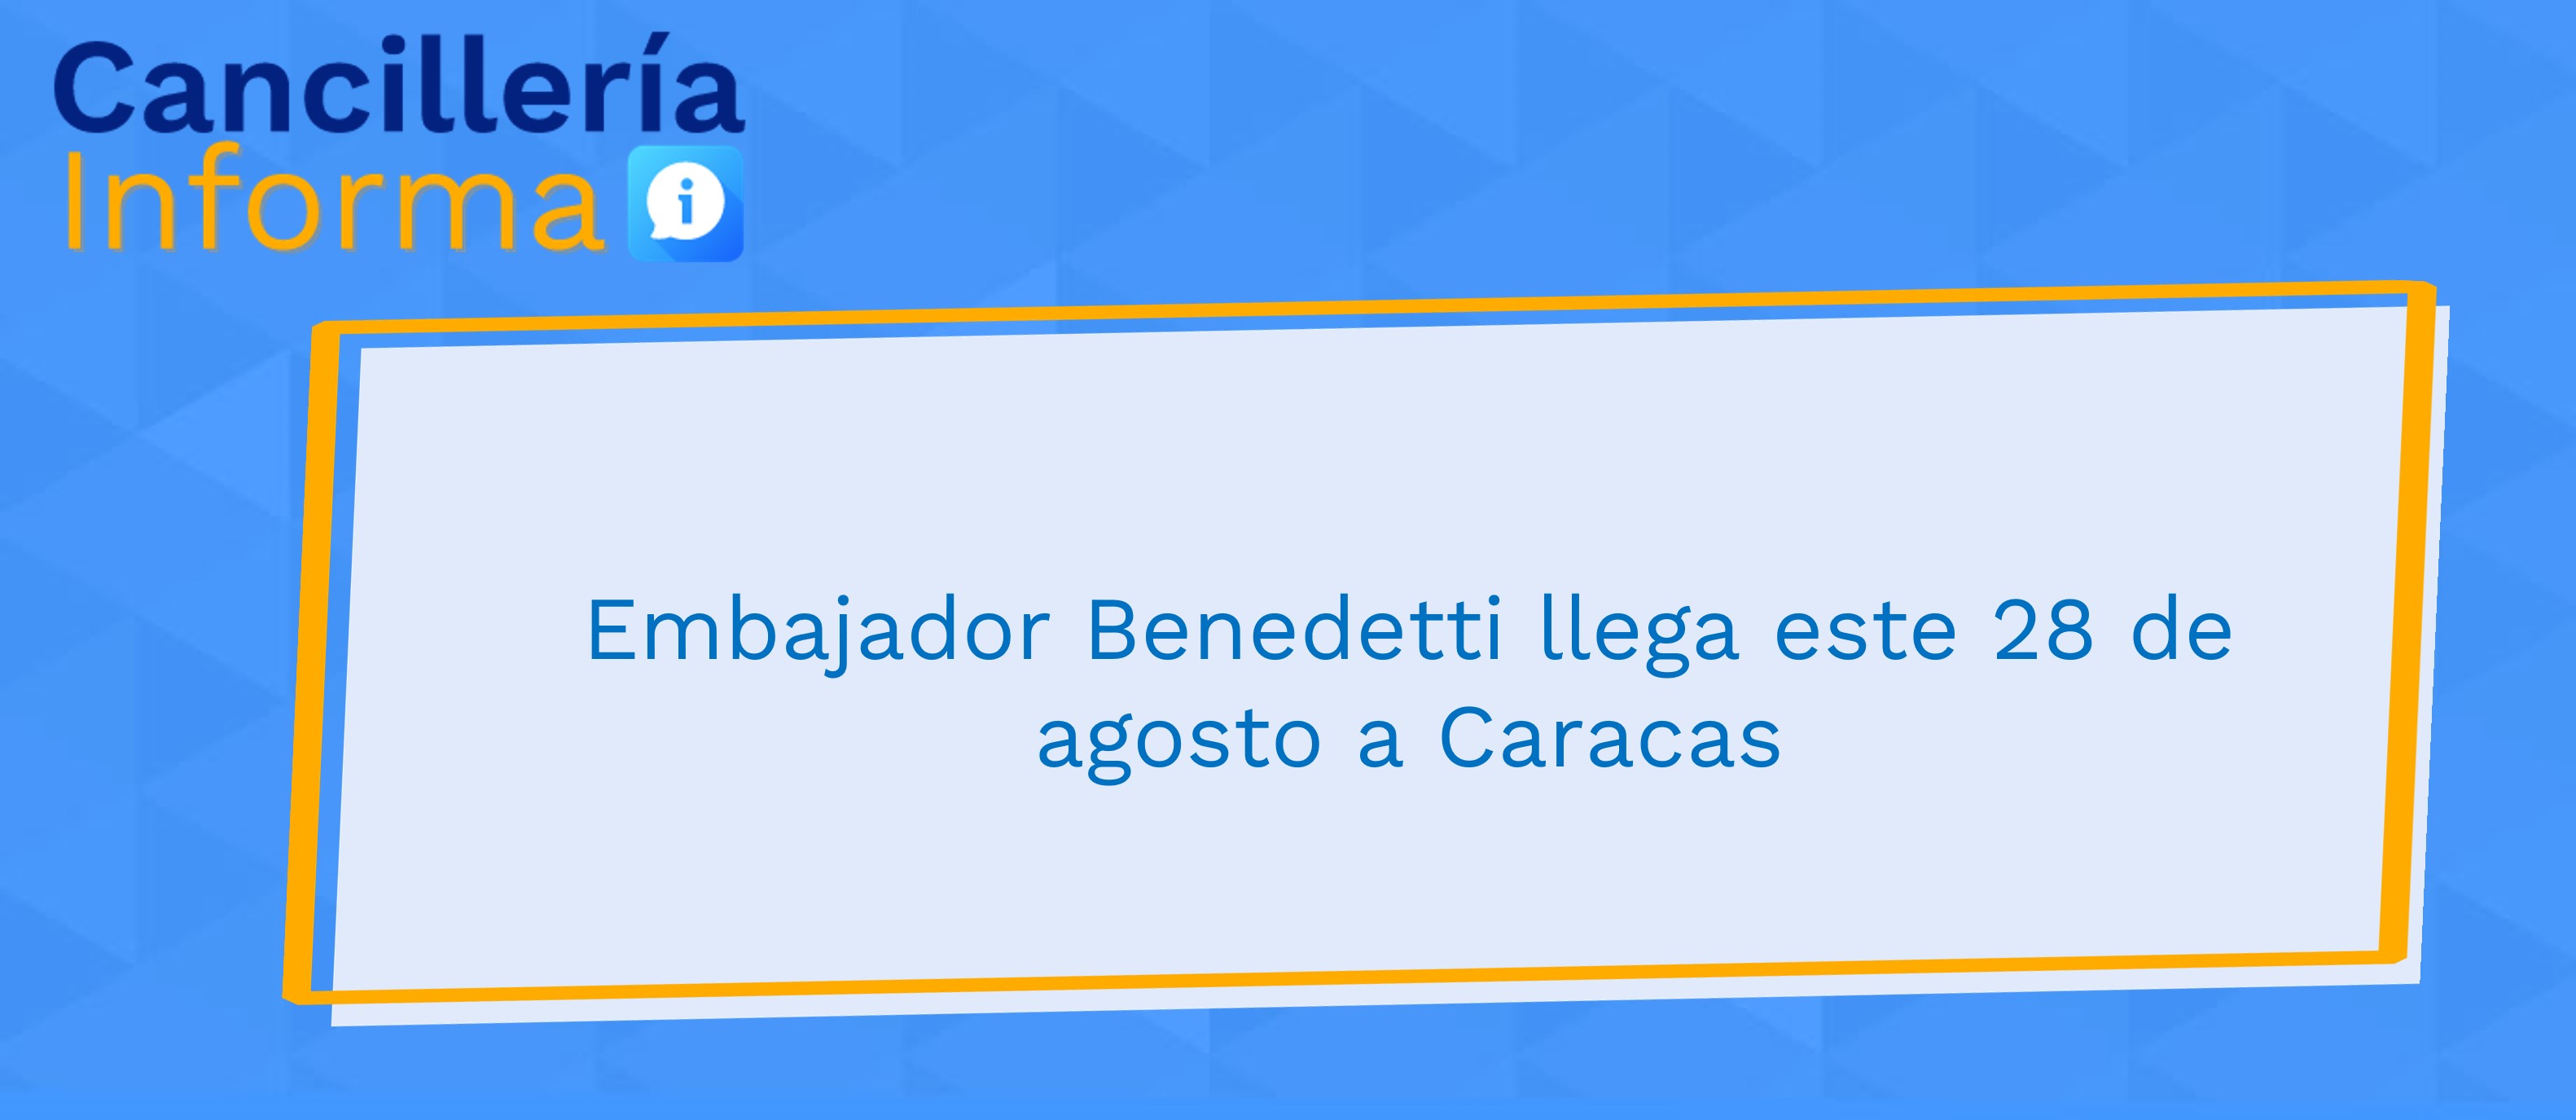 Embajador Armando Benedetti llega el domingo 28 de agosto de 2022 a Caracas